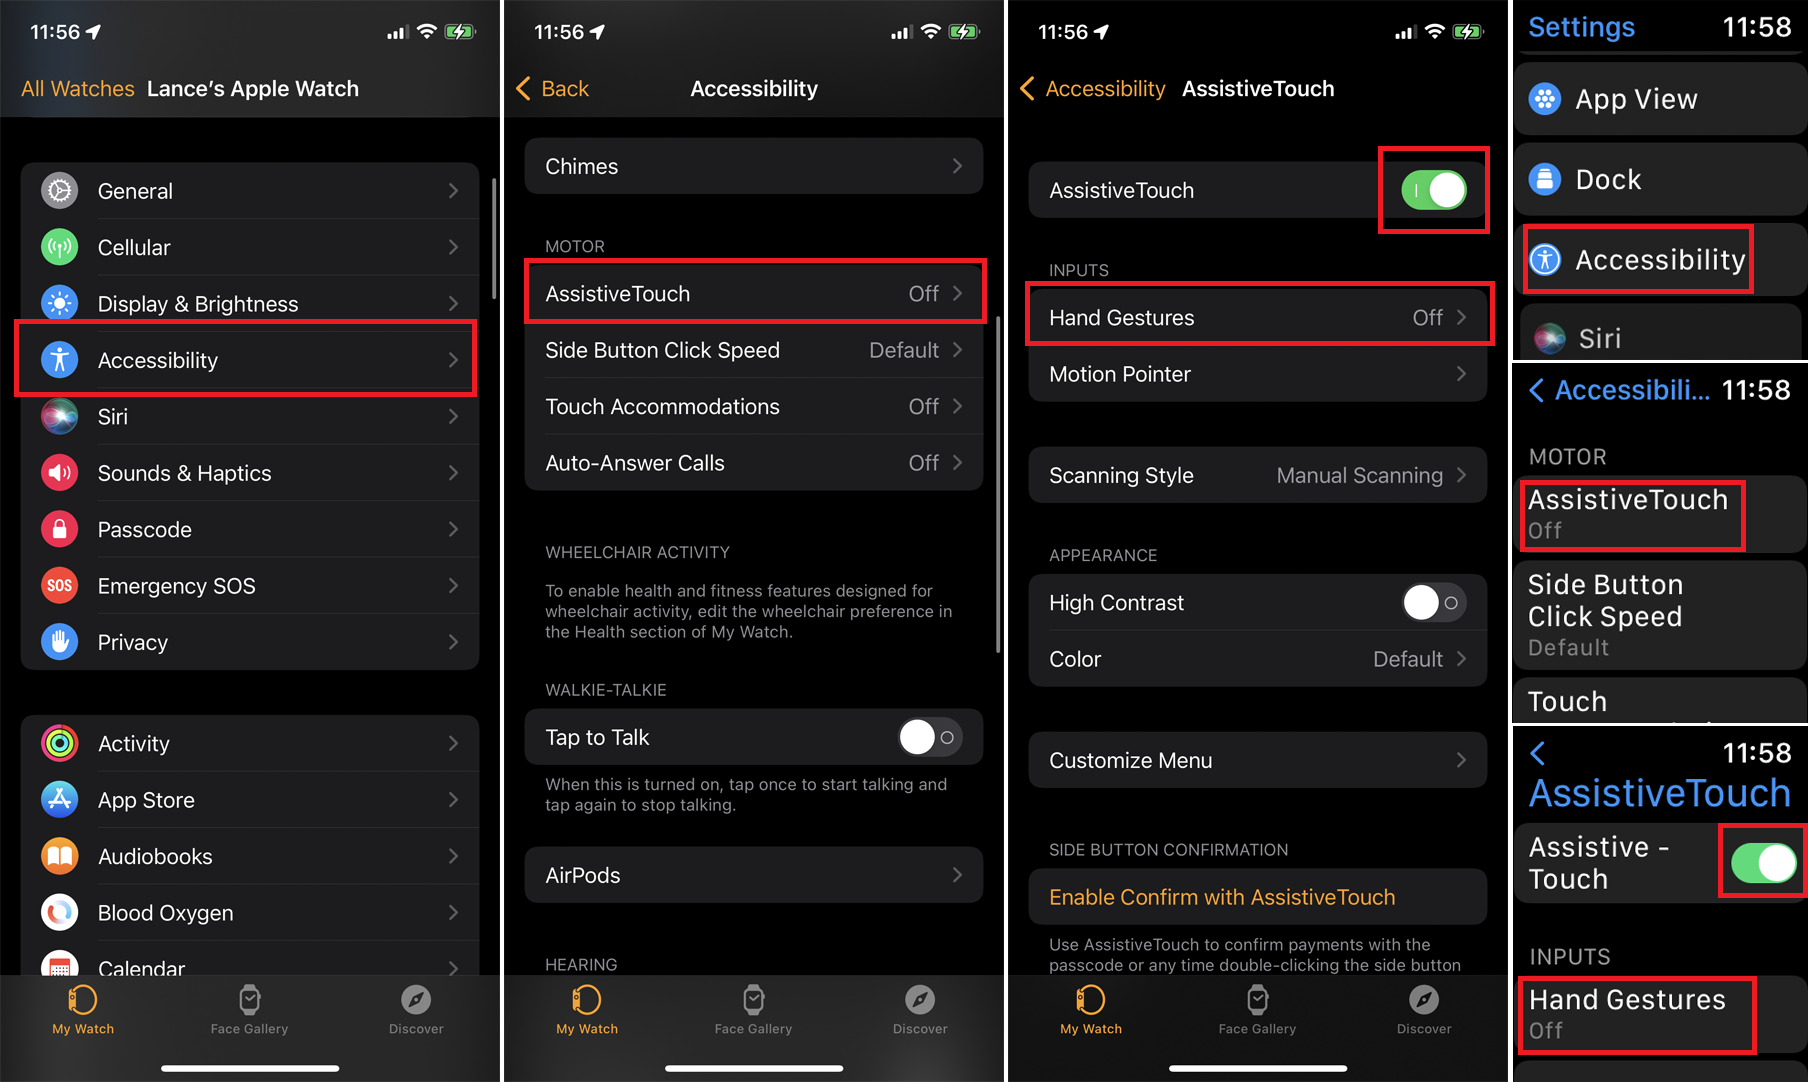 capturas de pantalla de los menús de iPhone y Apple Watch necesarias para activar el toque de asistencia